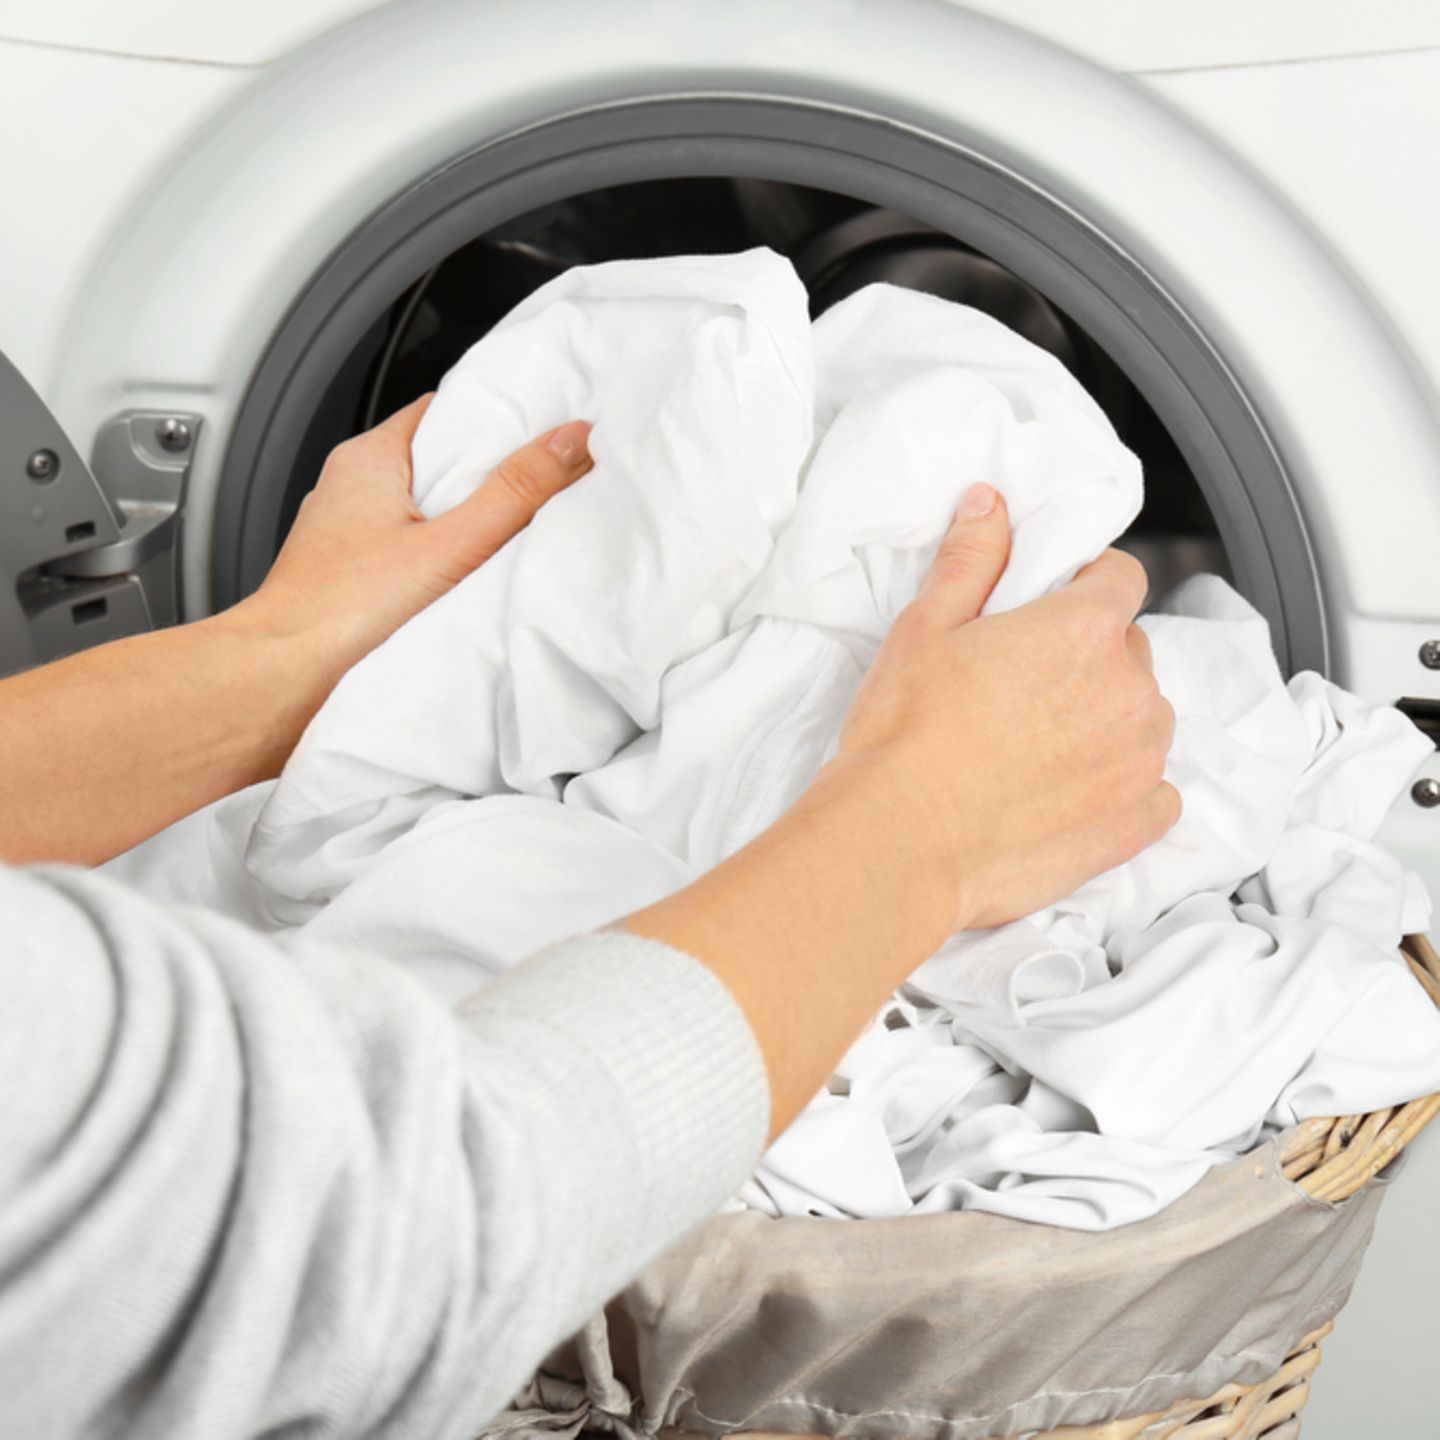 Braune flecken auf weißer wäsche nach dem waschen